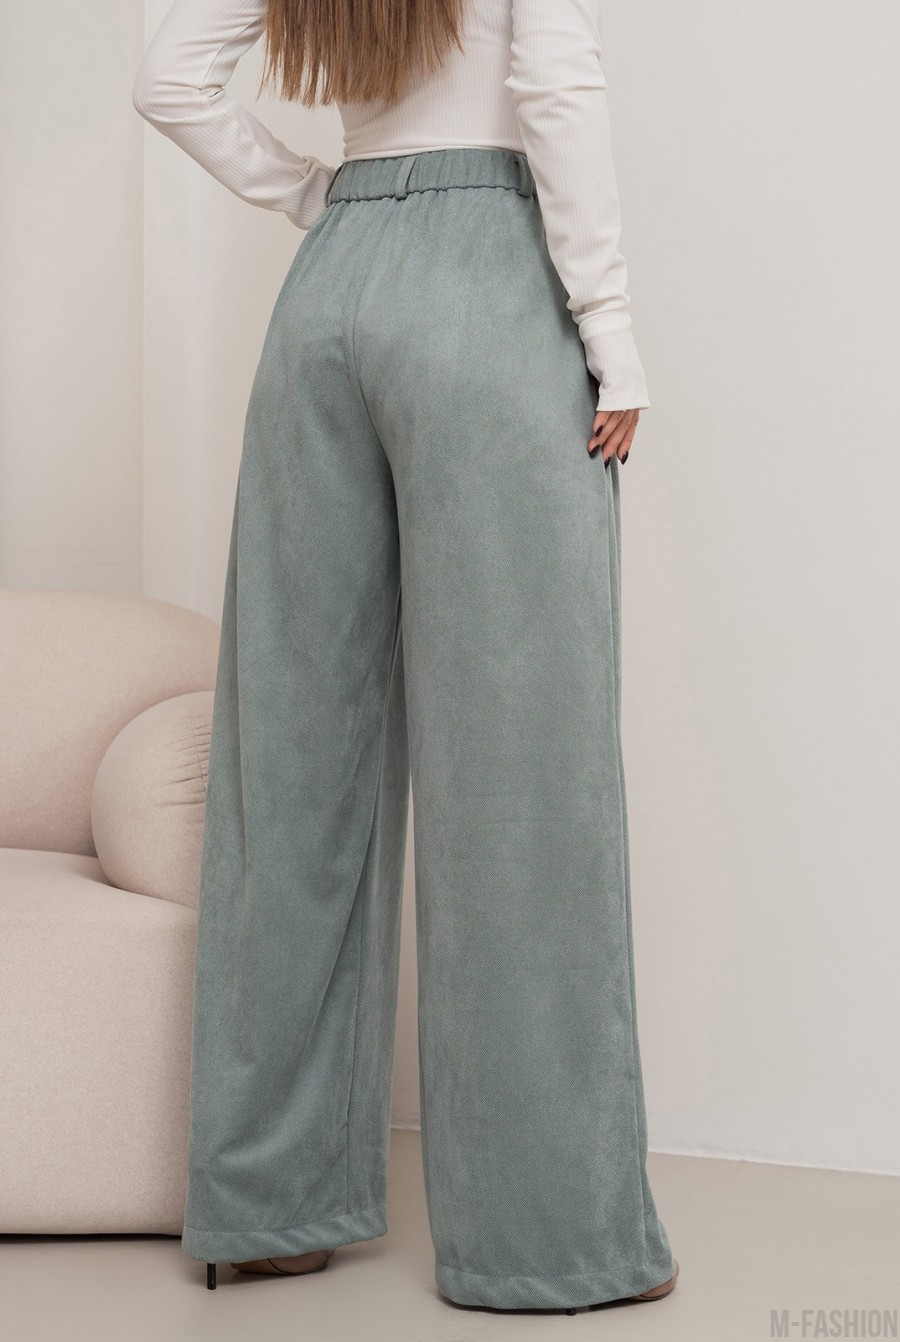 Оливковые свободные брюки палаццо из эко-замши - Фото 3